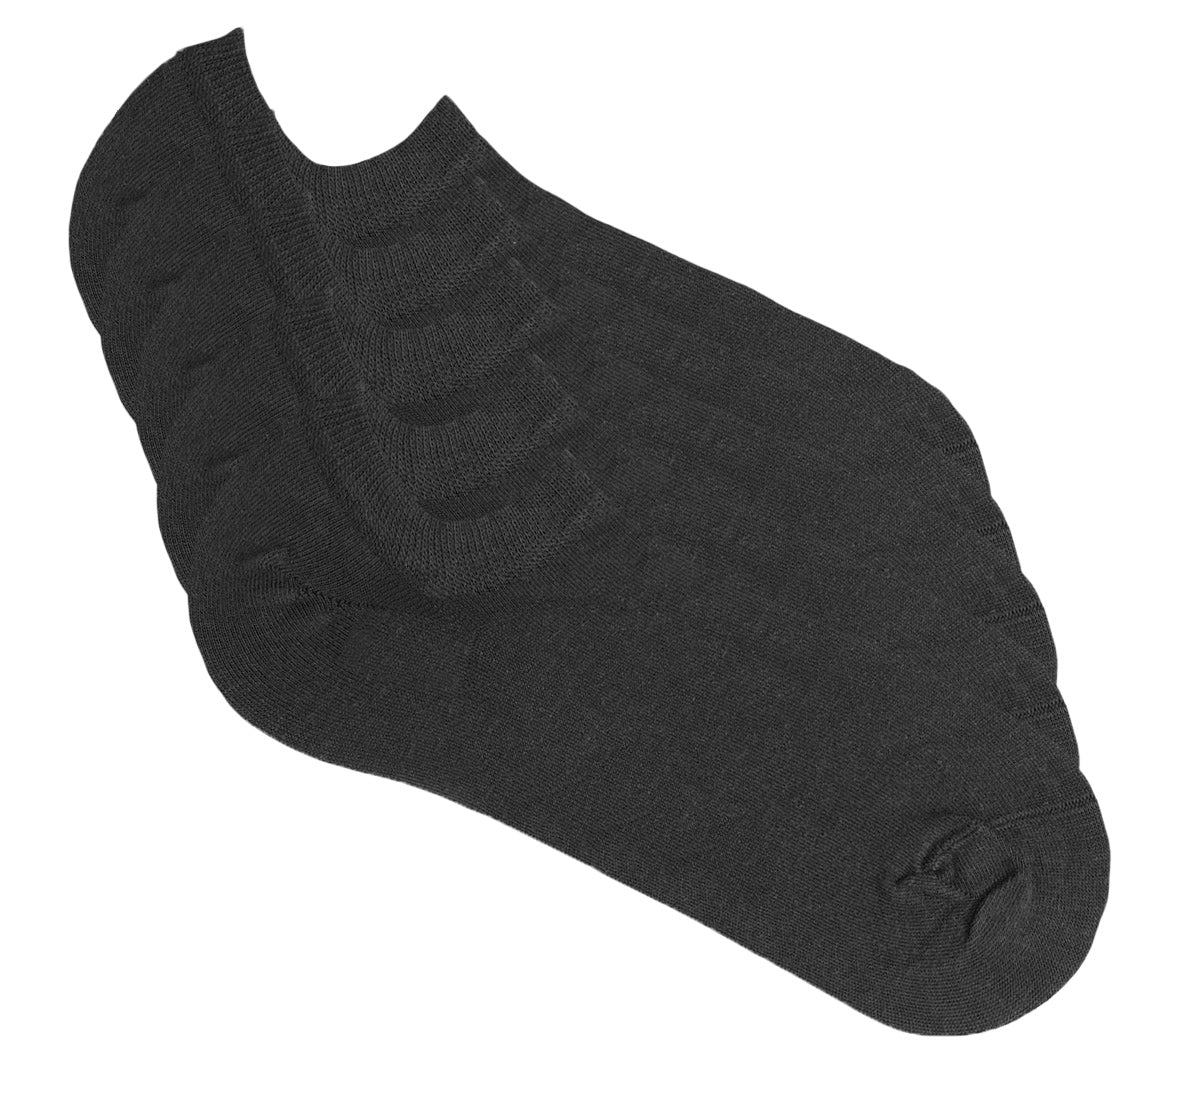 5 pair of black sneaker socks from Tag Socks